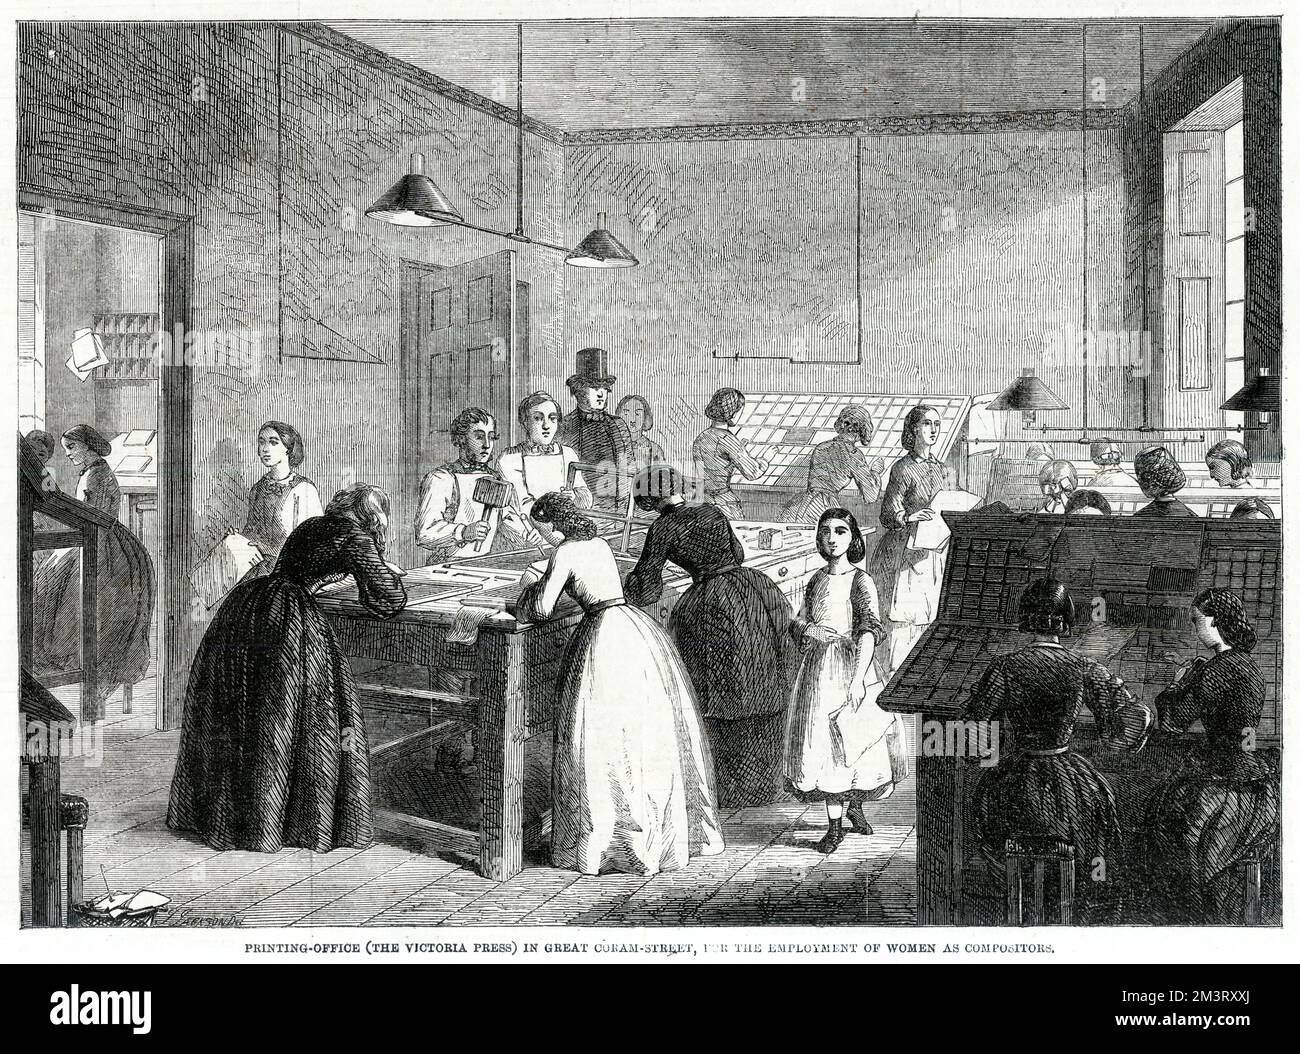 Frauen und Mädchen, die als Kompositoren unter der Aufsicht eines Mannes in der Victoria Press Druckerei in Great Coram Street, London, arbeiten. Die Komponisten zählten zu den am höchsten bezahlten Arbeitnehmern im Druckgewerbe, und Frauen besetzten diese Positionen häufig. Datum: 1861 Stockfoto